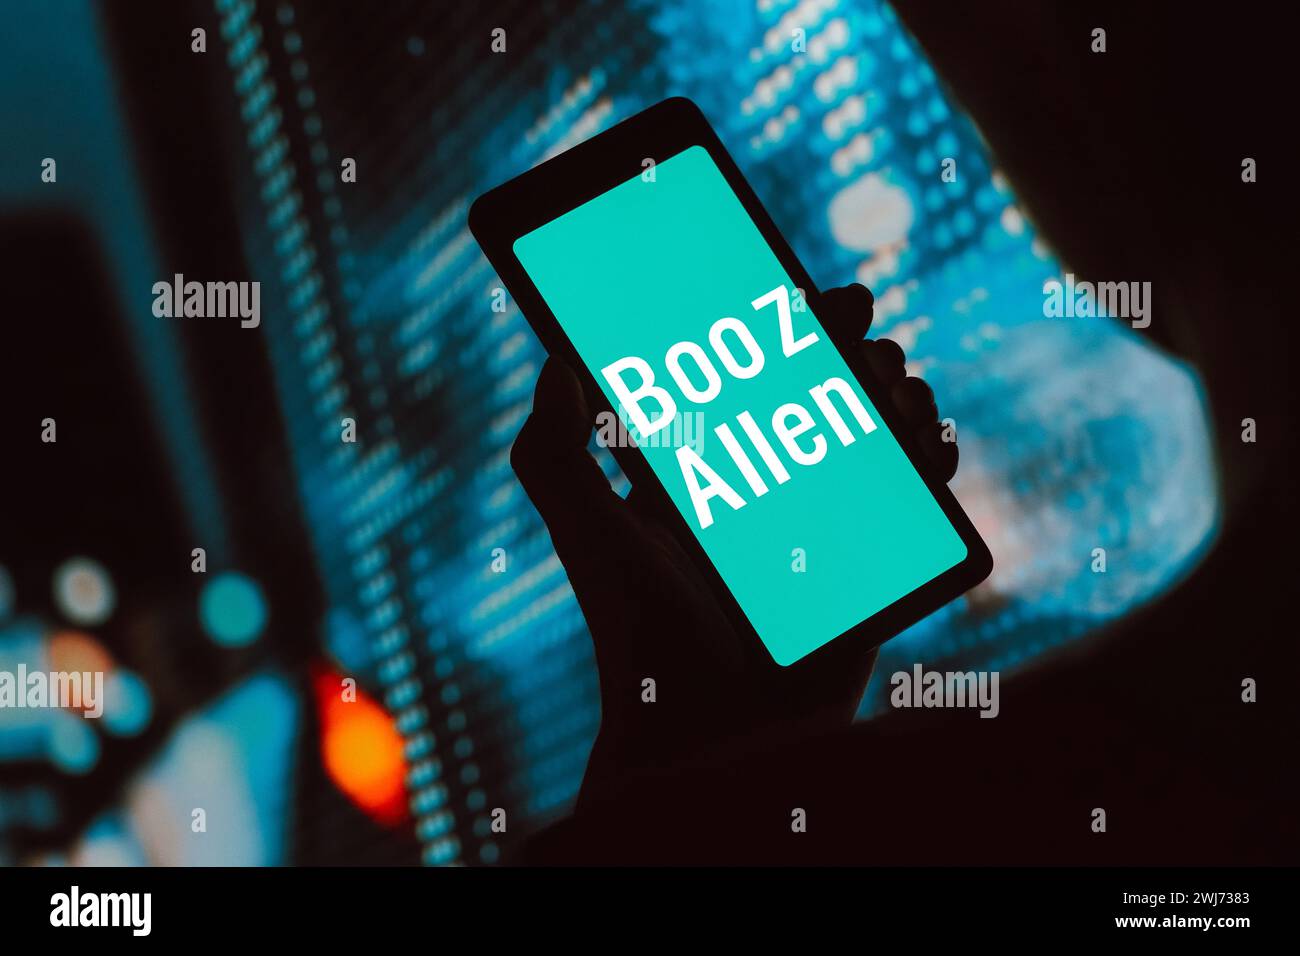 Dans cette illustration photo, le logo Booz Allen Hamilton Holding Corporation est affiché sur l'écran d'un smartphone. Banque D'Images